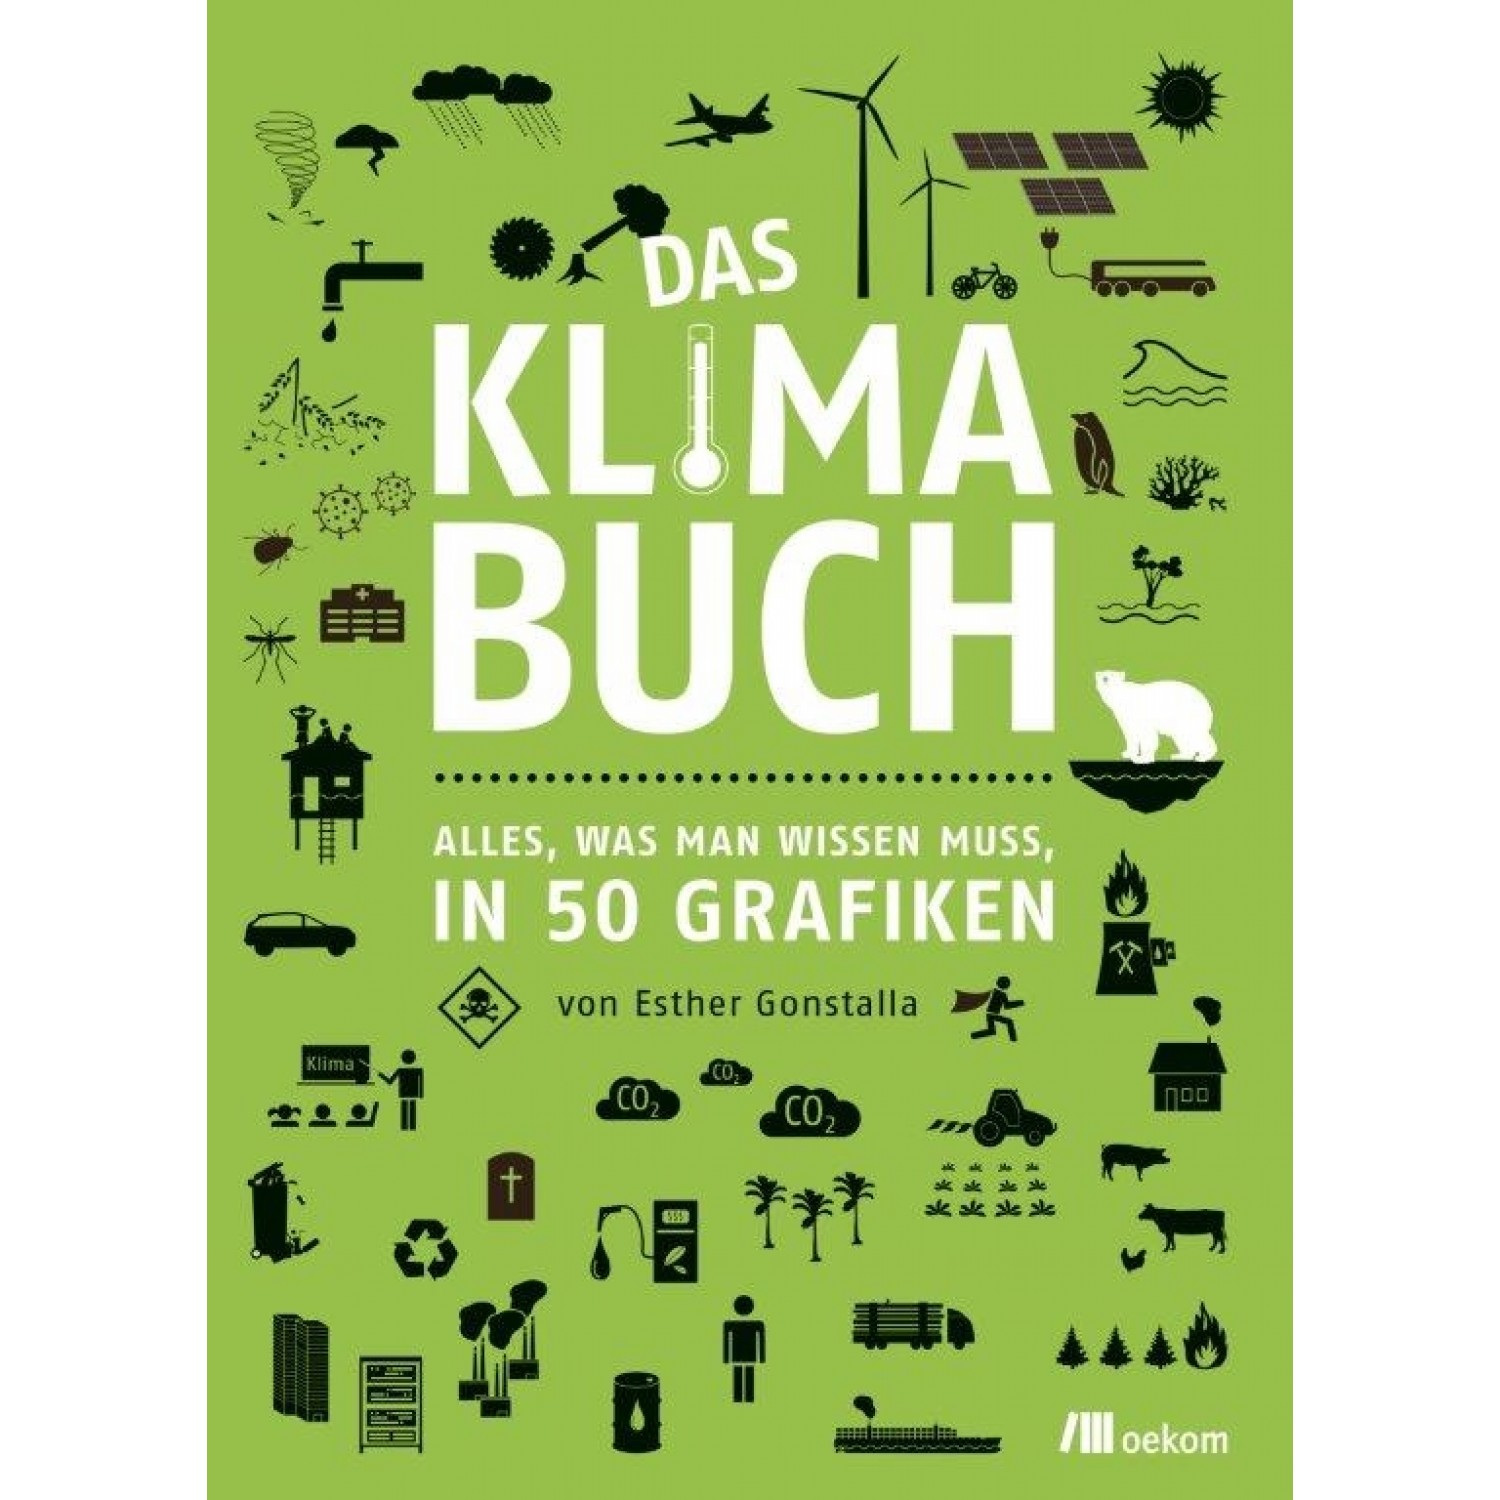 Das Klimabuch - German eco book | oekom publisher